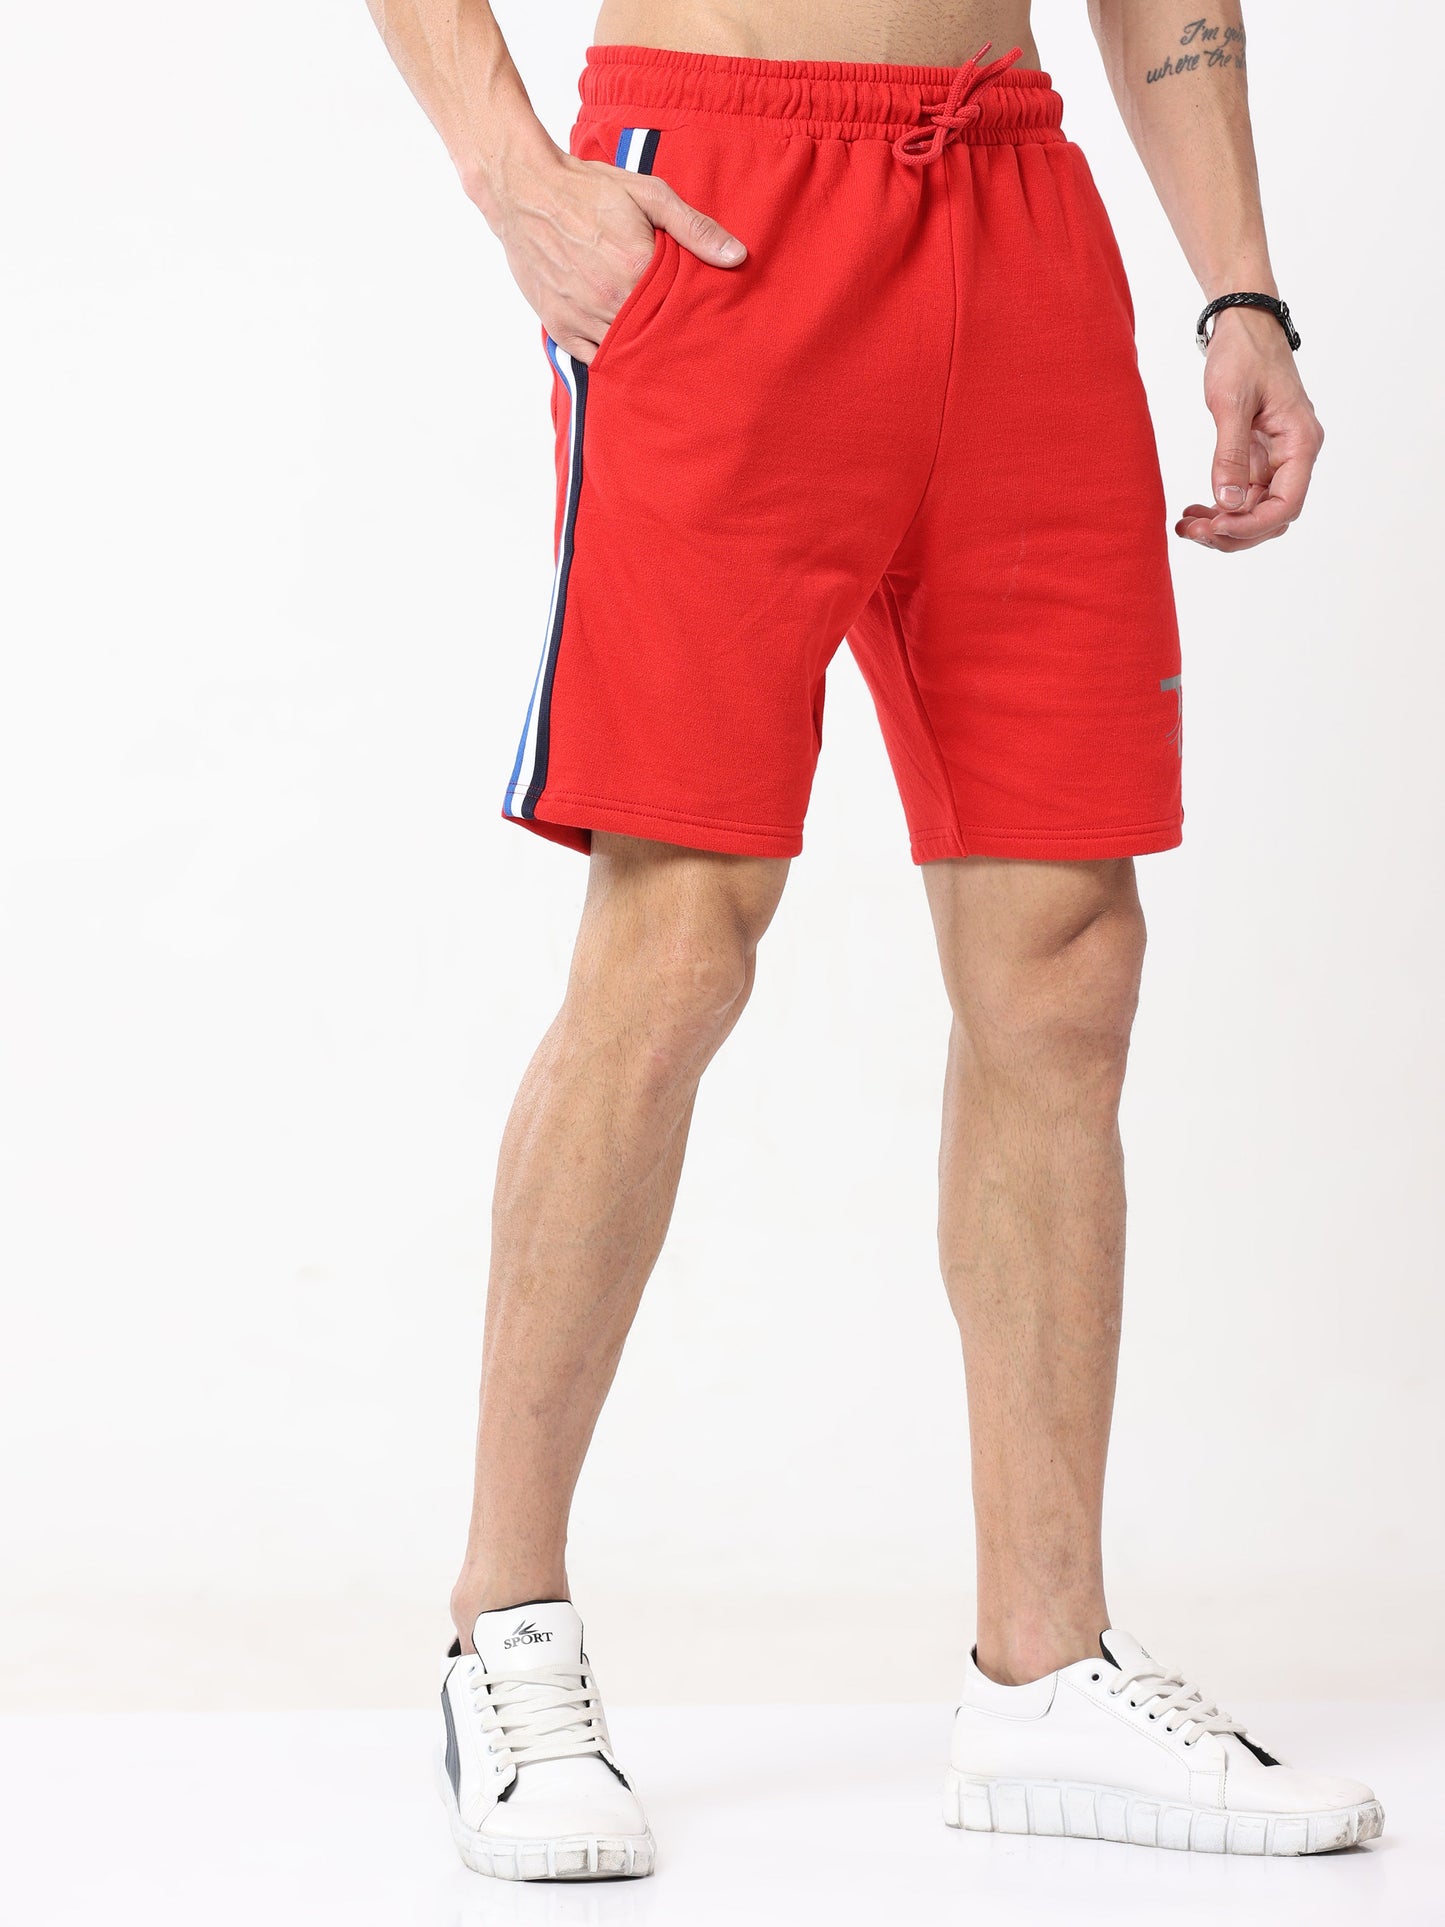 Comfy Cotton - Men's Premium Shorts : Red